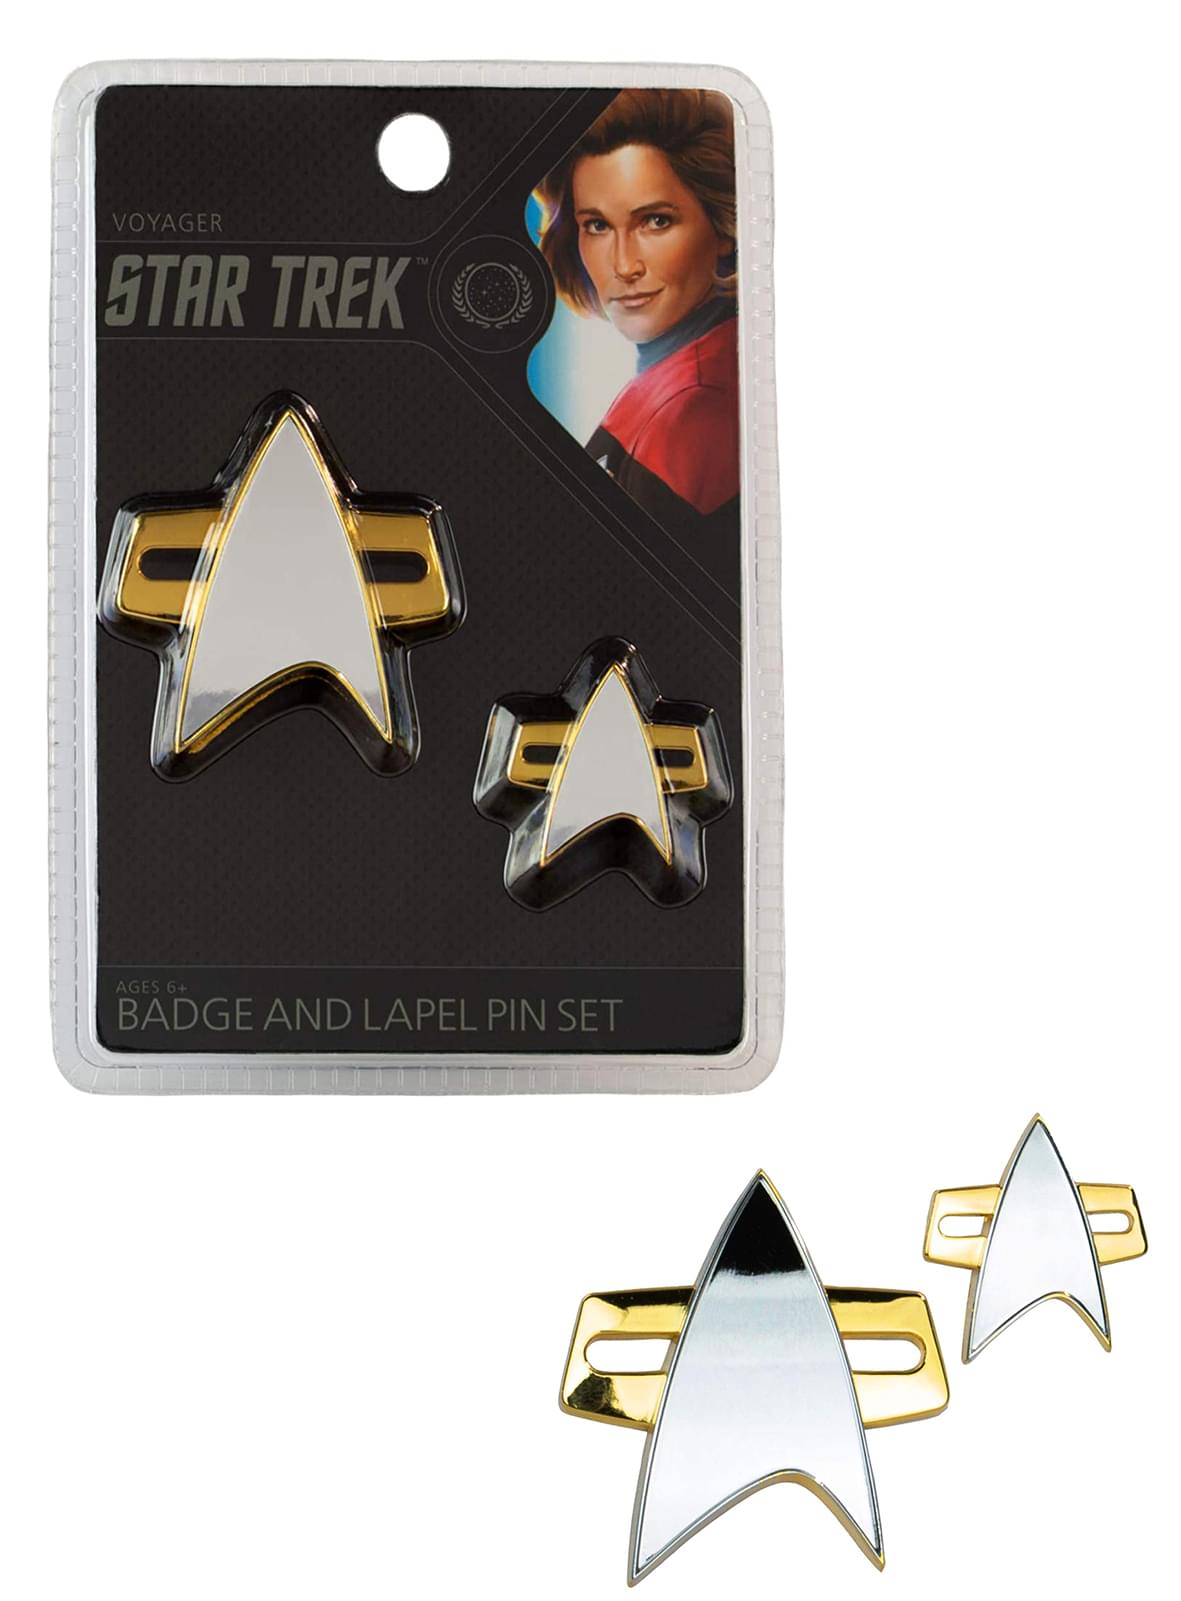 Star Trek Voyager Badge and Lapel Pin Set Free Shipping